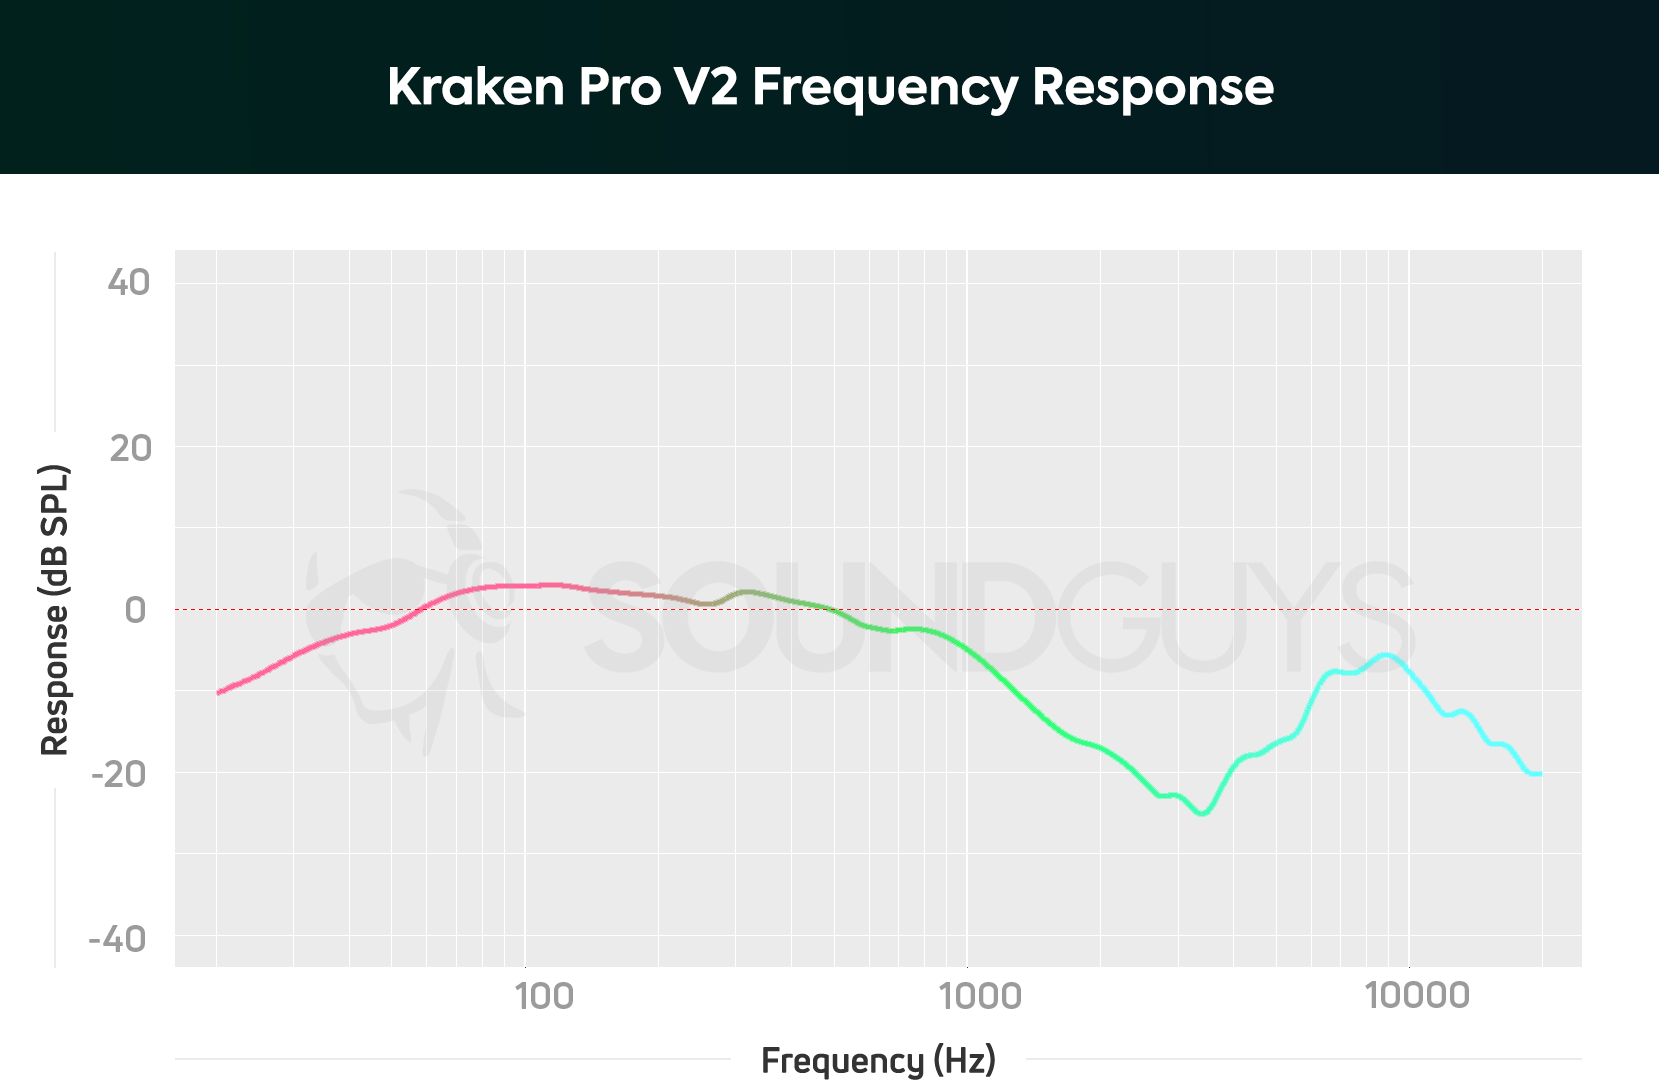 Kraken Pro V2 frequency response